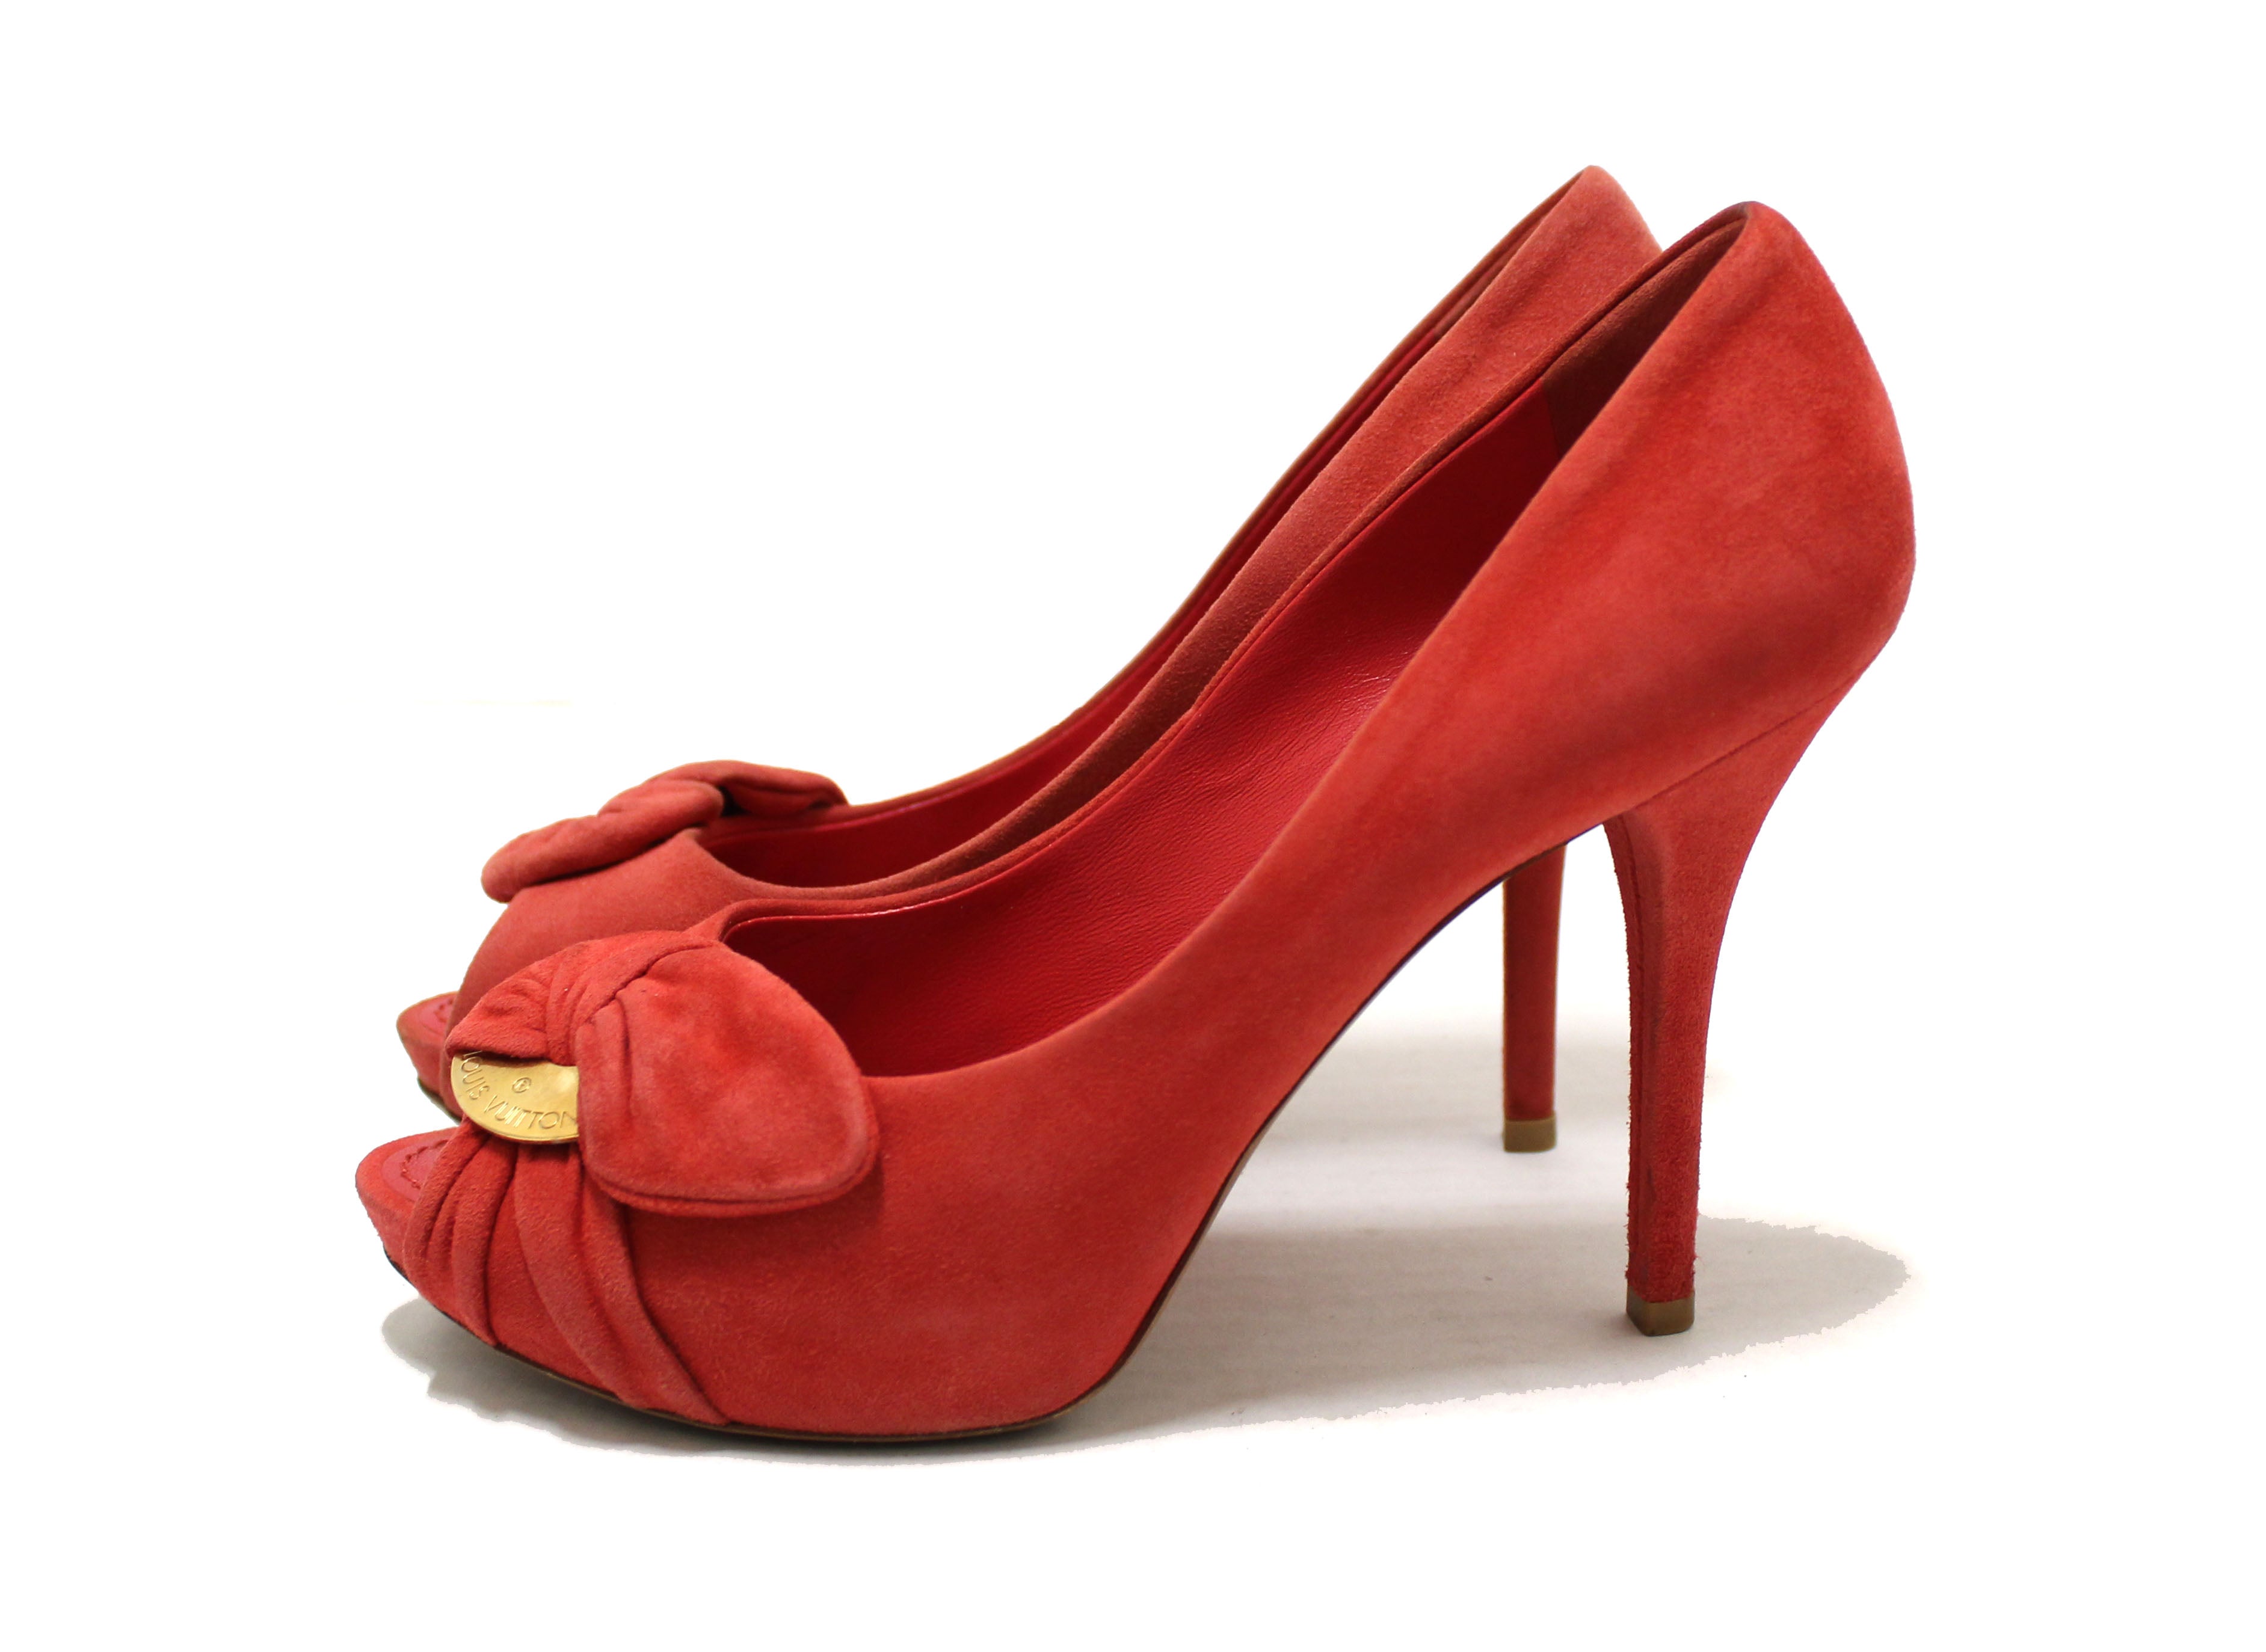 Authentic Vuitton Red Suede Leather Pumps Shoes 37 Paris Station Shop